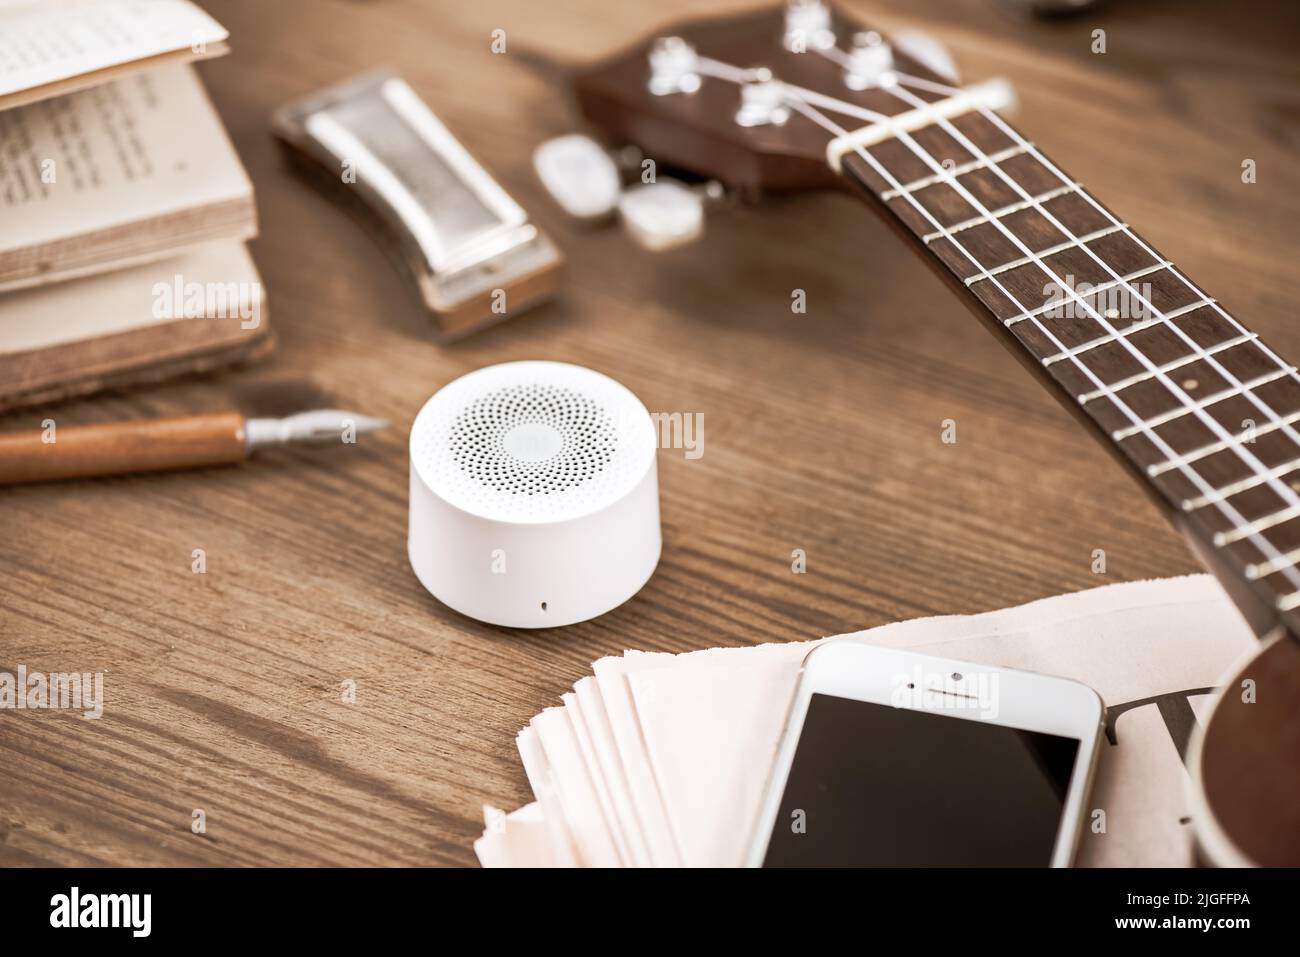 mini wireless portable speaker for music listening. Stock Photo